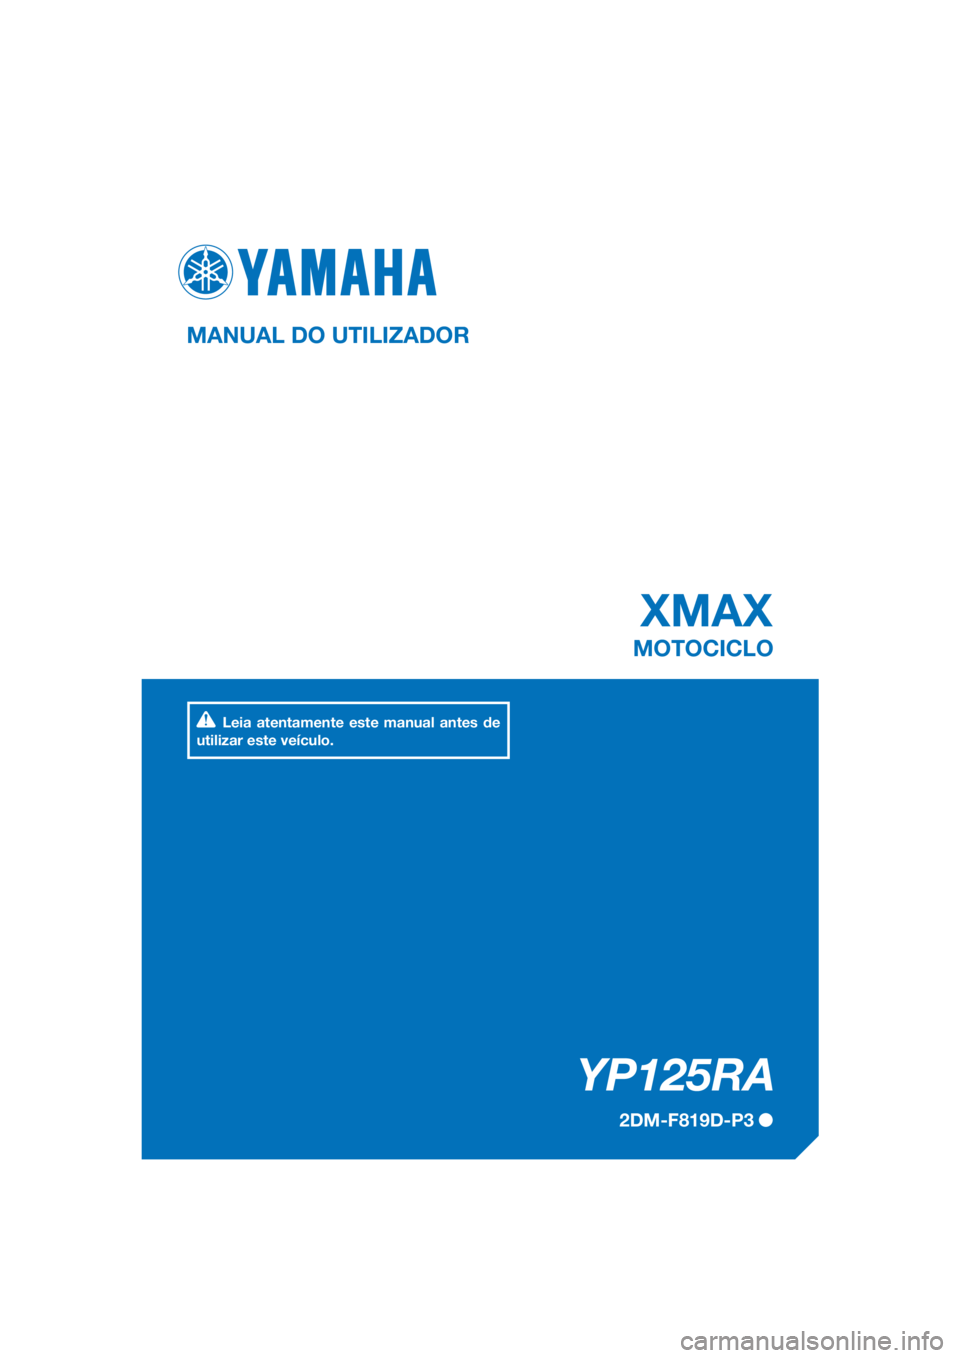 YAMAHA XMAX 125 2017  Manual de utilização (in Portuguese) PANTONE285C
YP125RA
XMAX
MANUAL DO UTILIZADOR
2DM-F819D-P3
MOTOCICLO
Leia atentamente este manual antes de 
utilizar este veículo.
[Portuguese  (P)] 